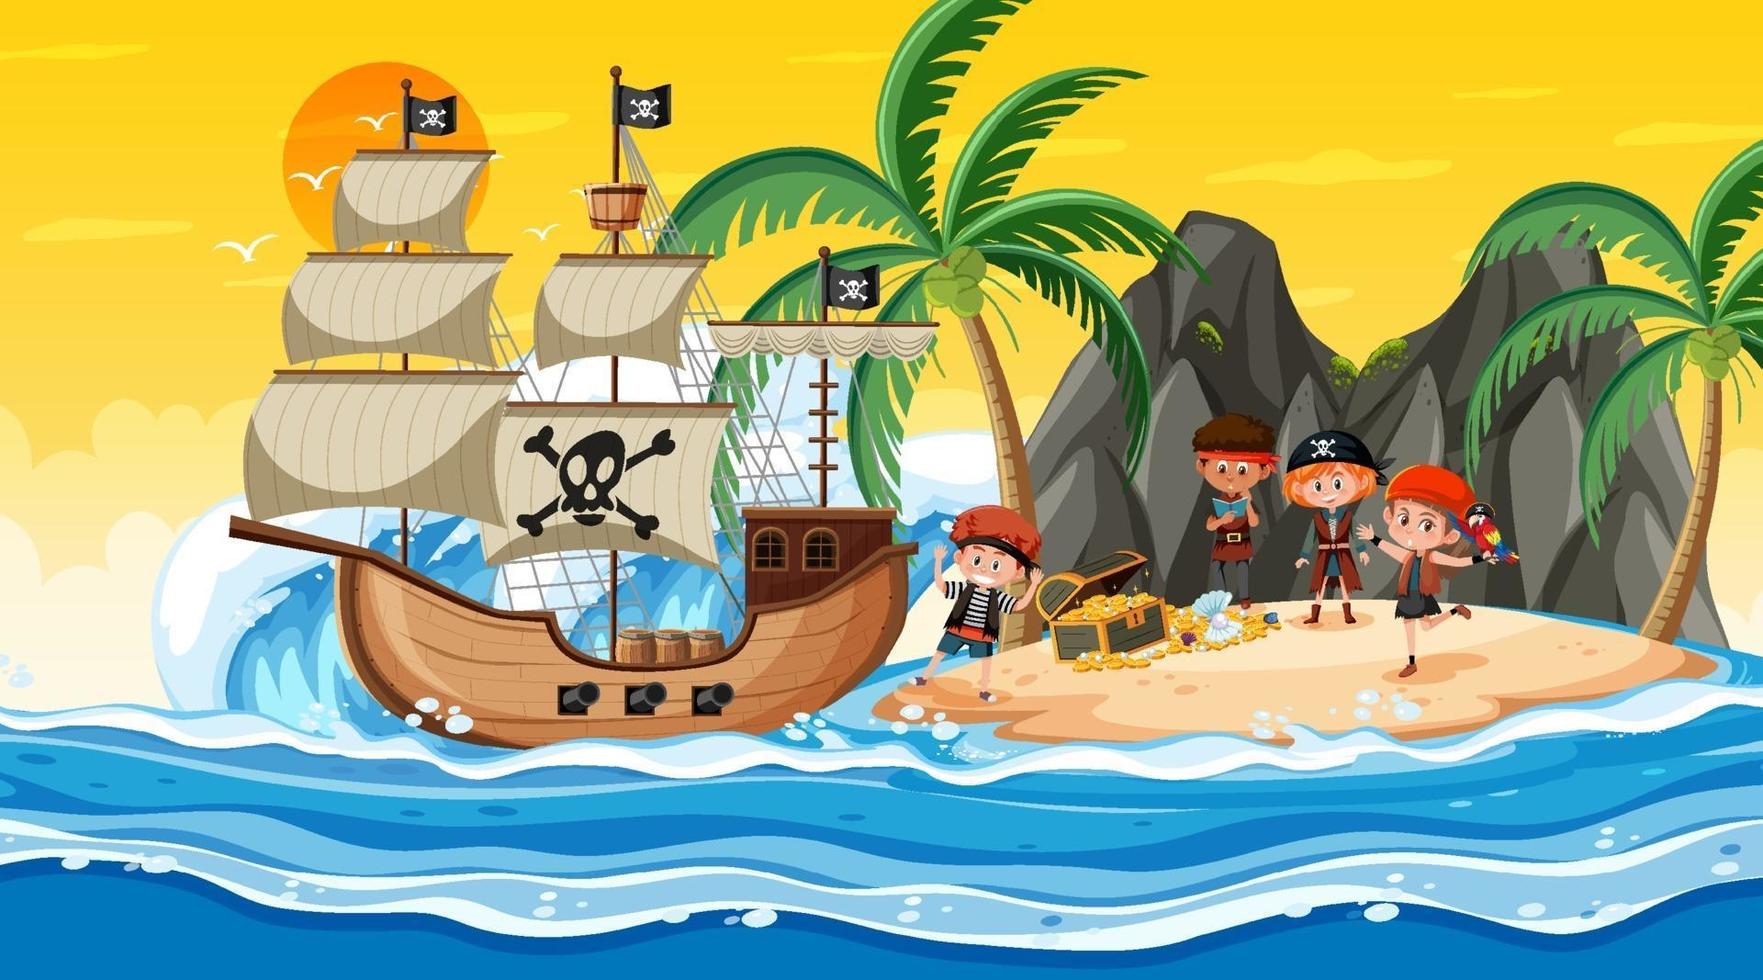 escena de la isla del tesoro al atardecer con niños piratas vector